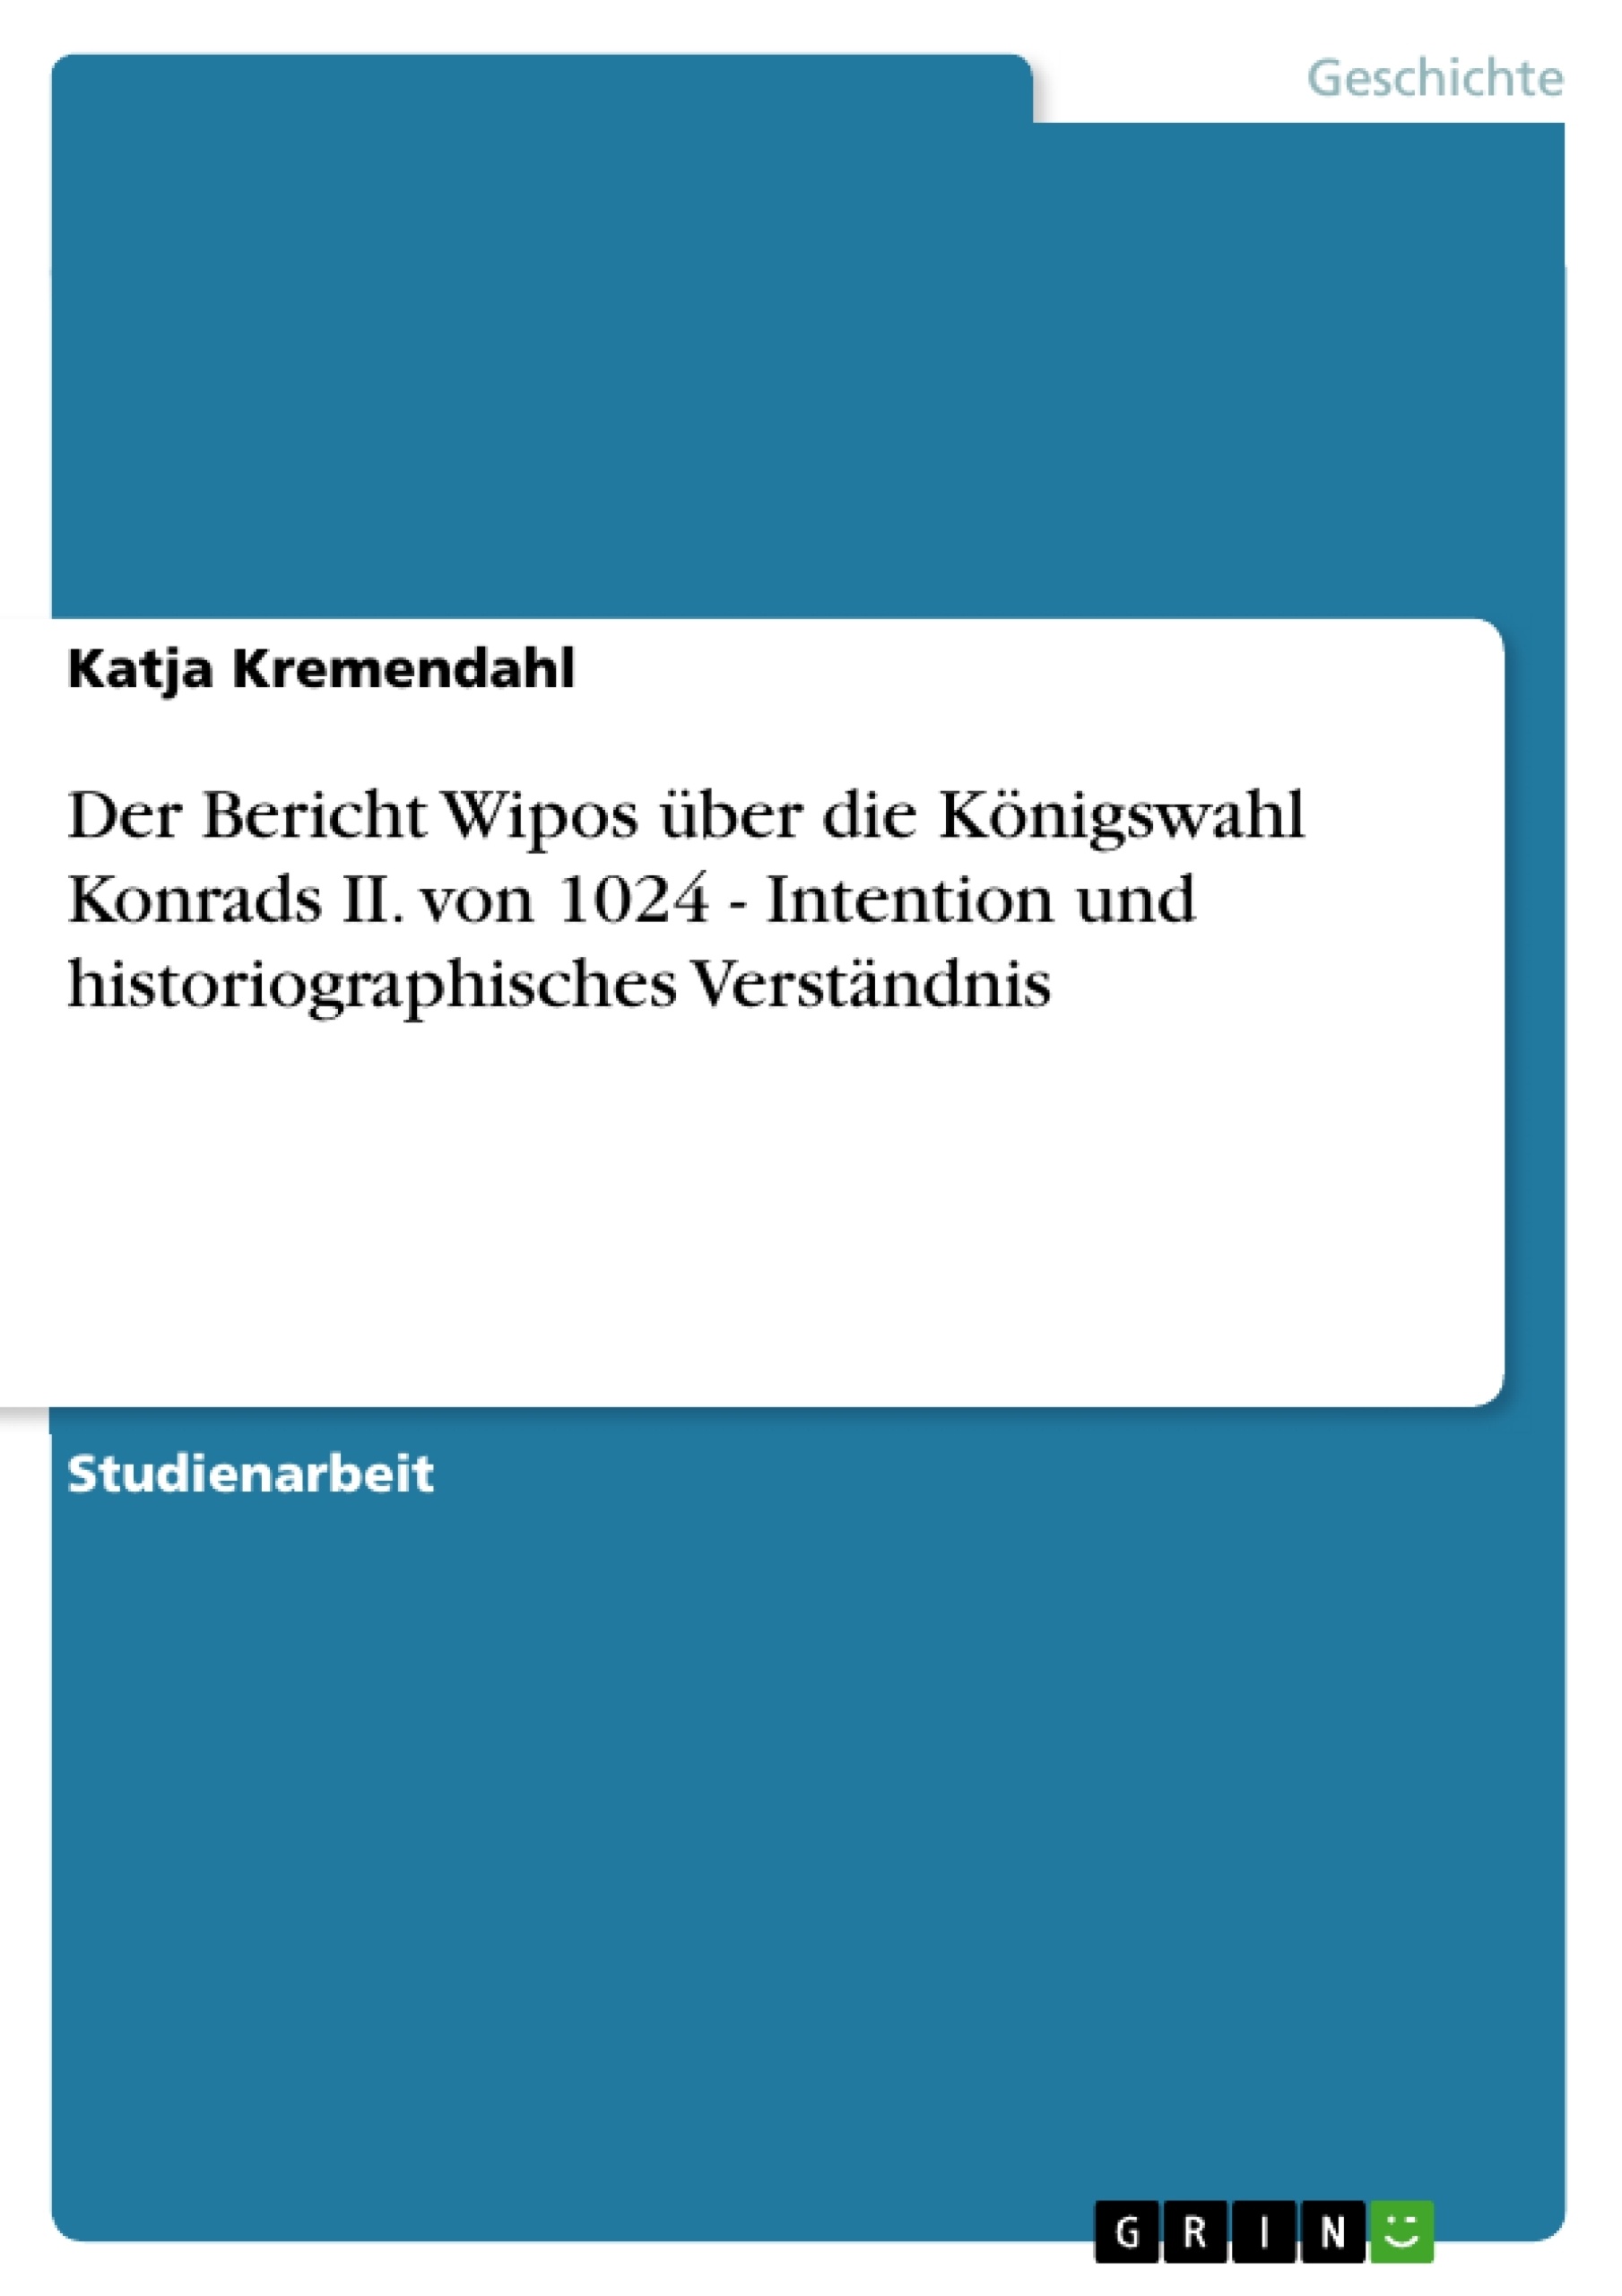 Title: Der Bericht Wipos über die Königswahl Konrads II. von 1024 - Intention und historiographisches Verständnis